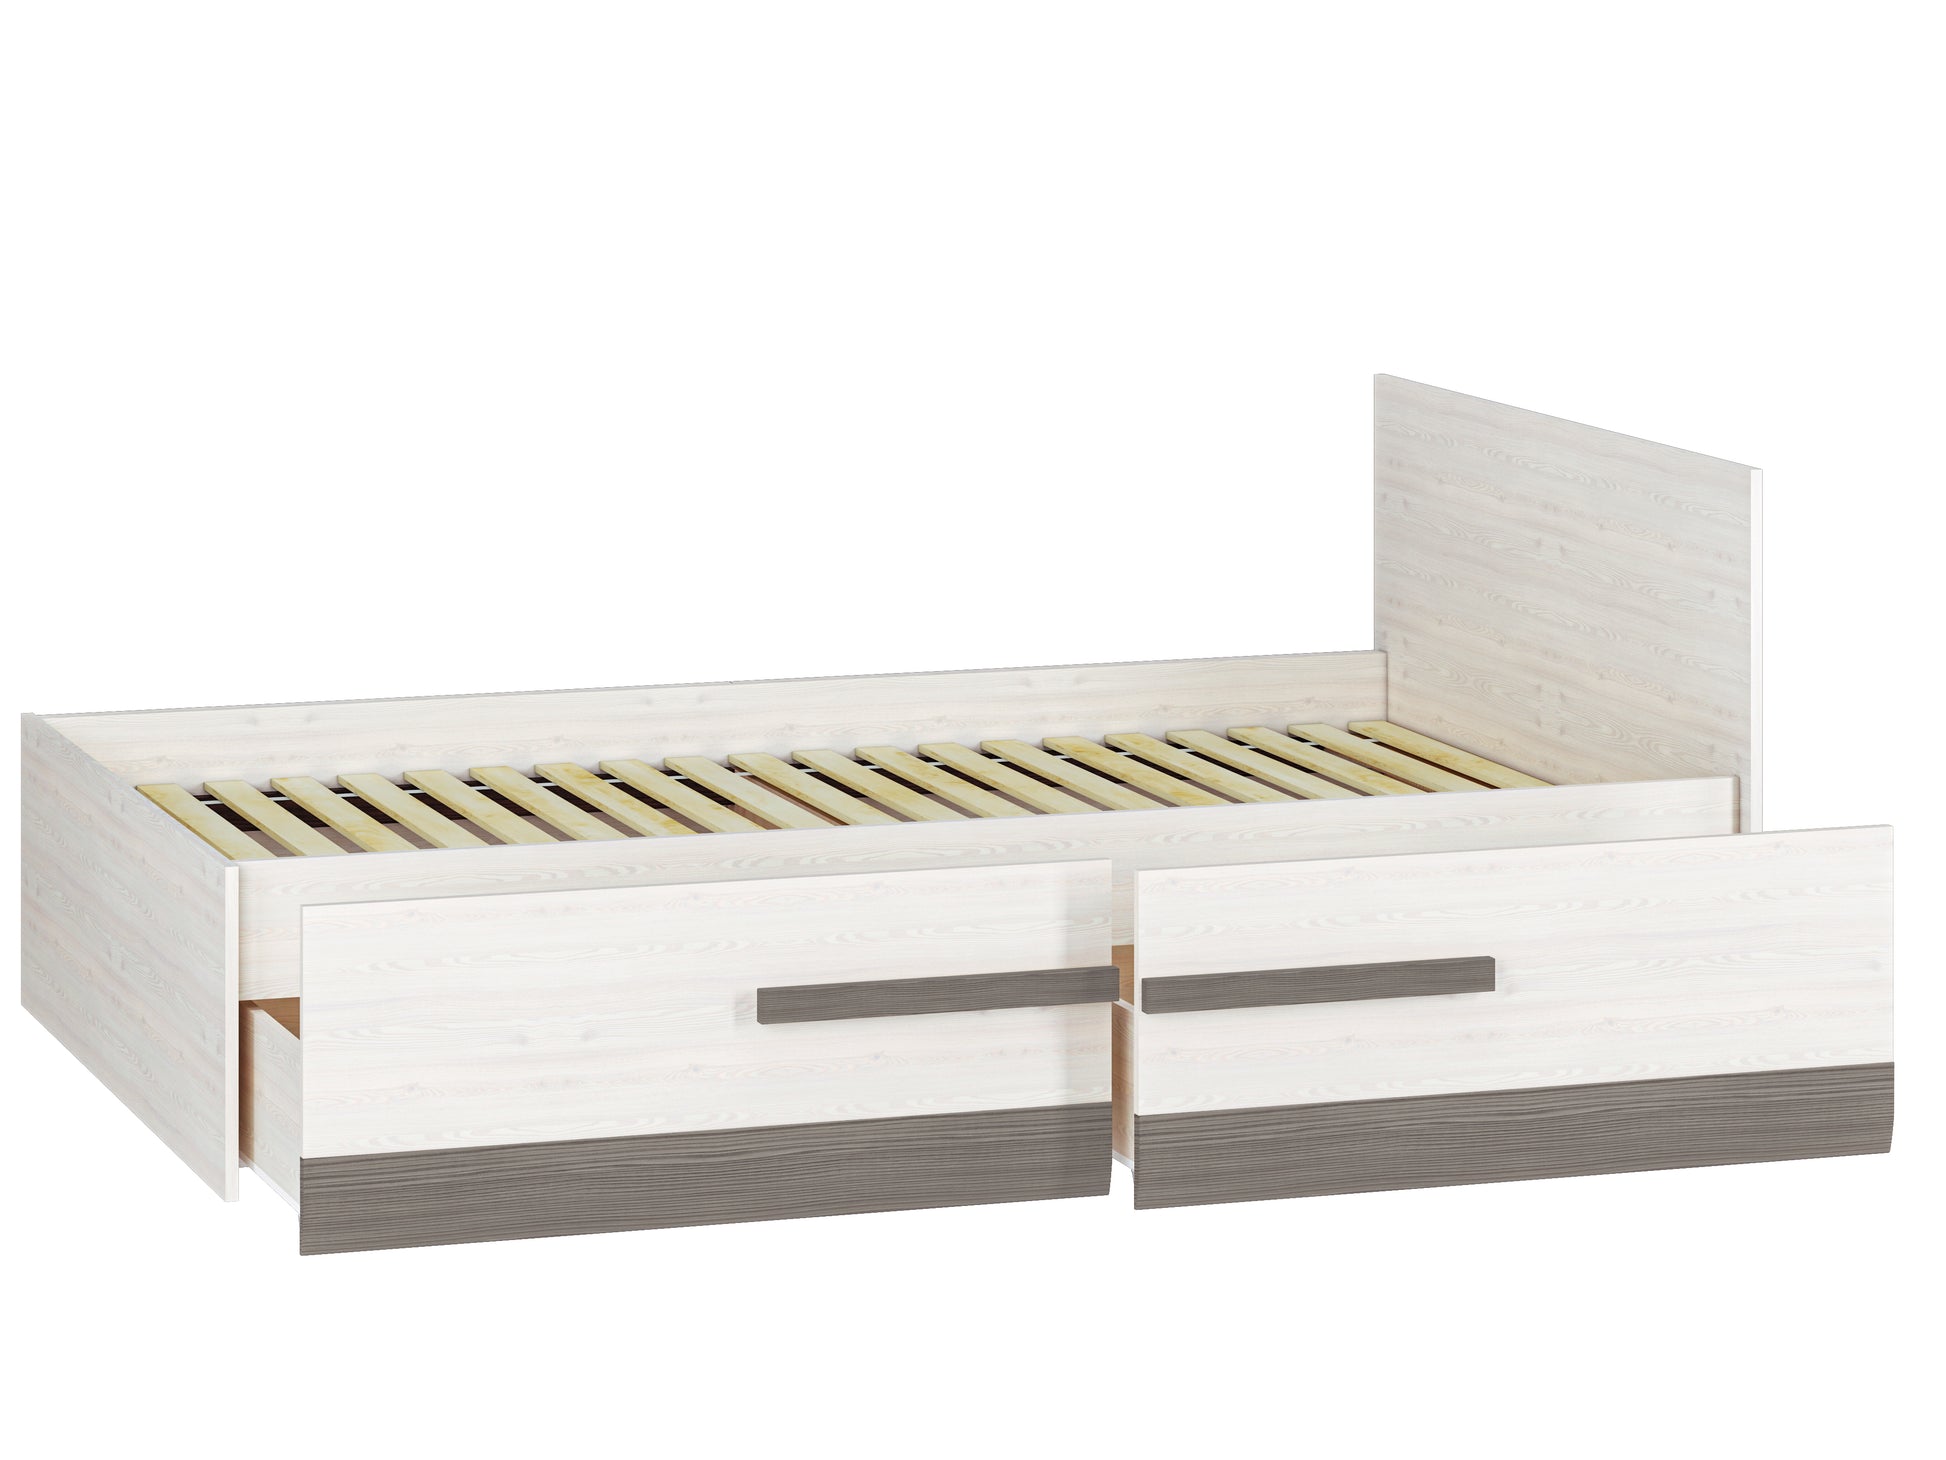 Zdjęcie przedstawiające łóżko Blanka z wysuniętymi szufladami, stelażem oraz powierzchnią spania 120x200 cm. 